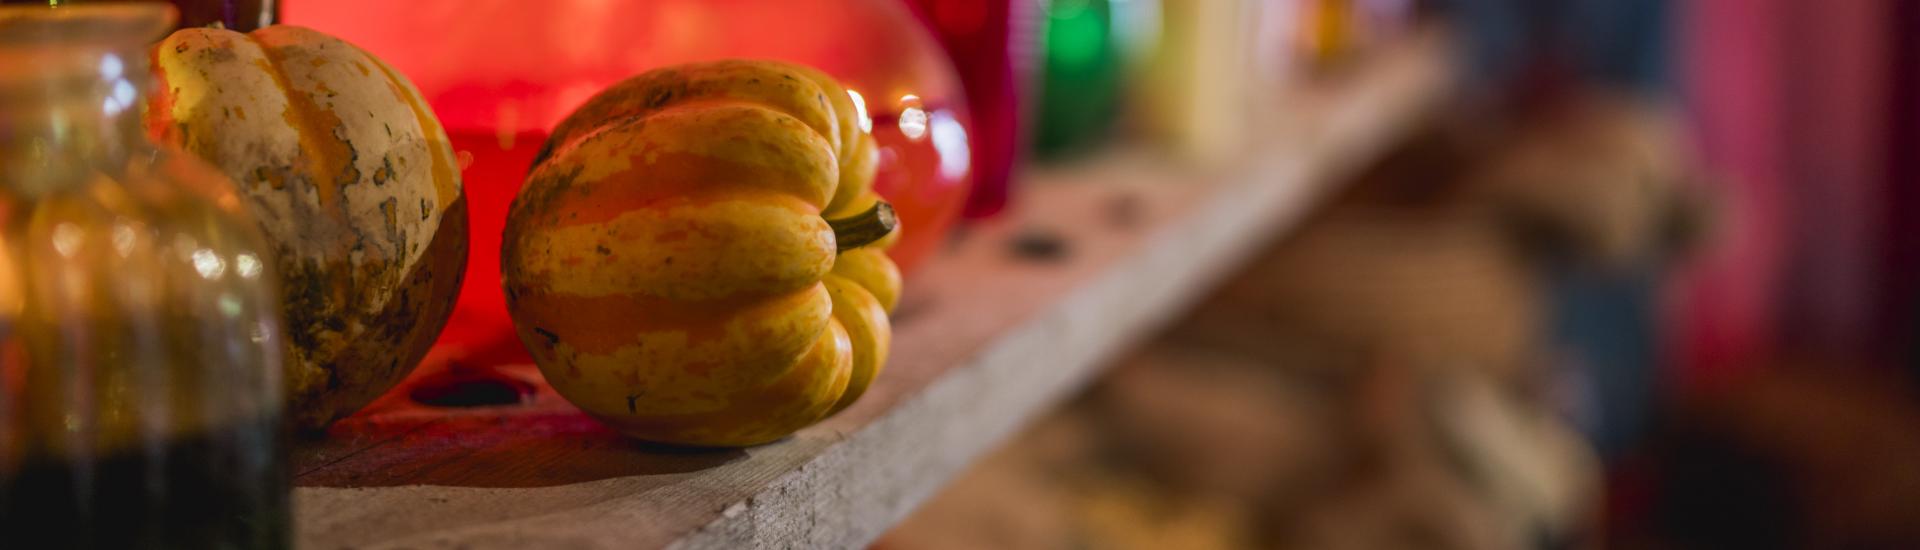 Up close shot of a pumpkin on a shelf